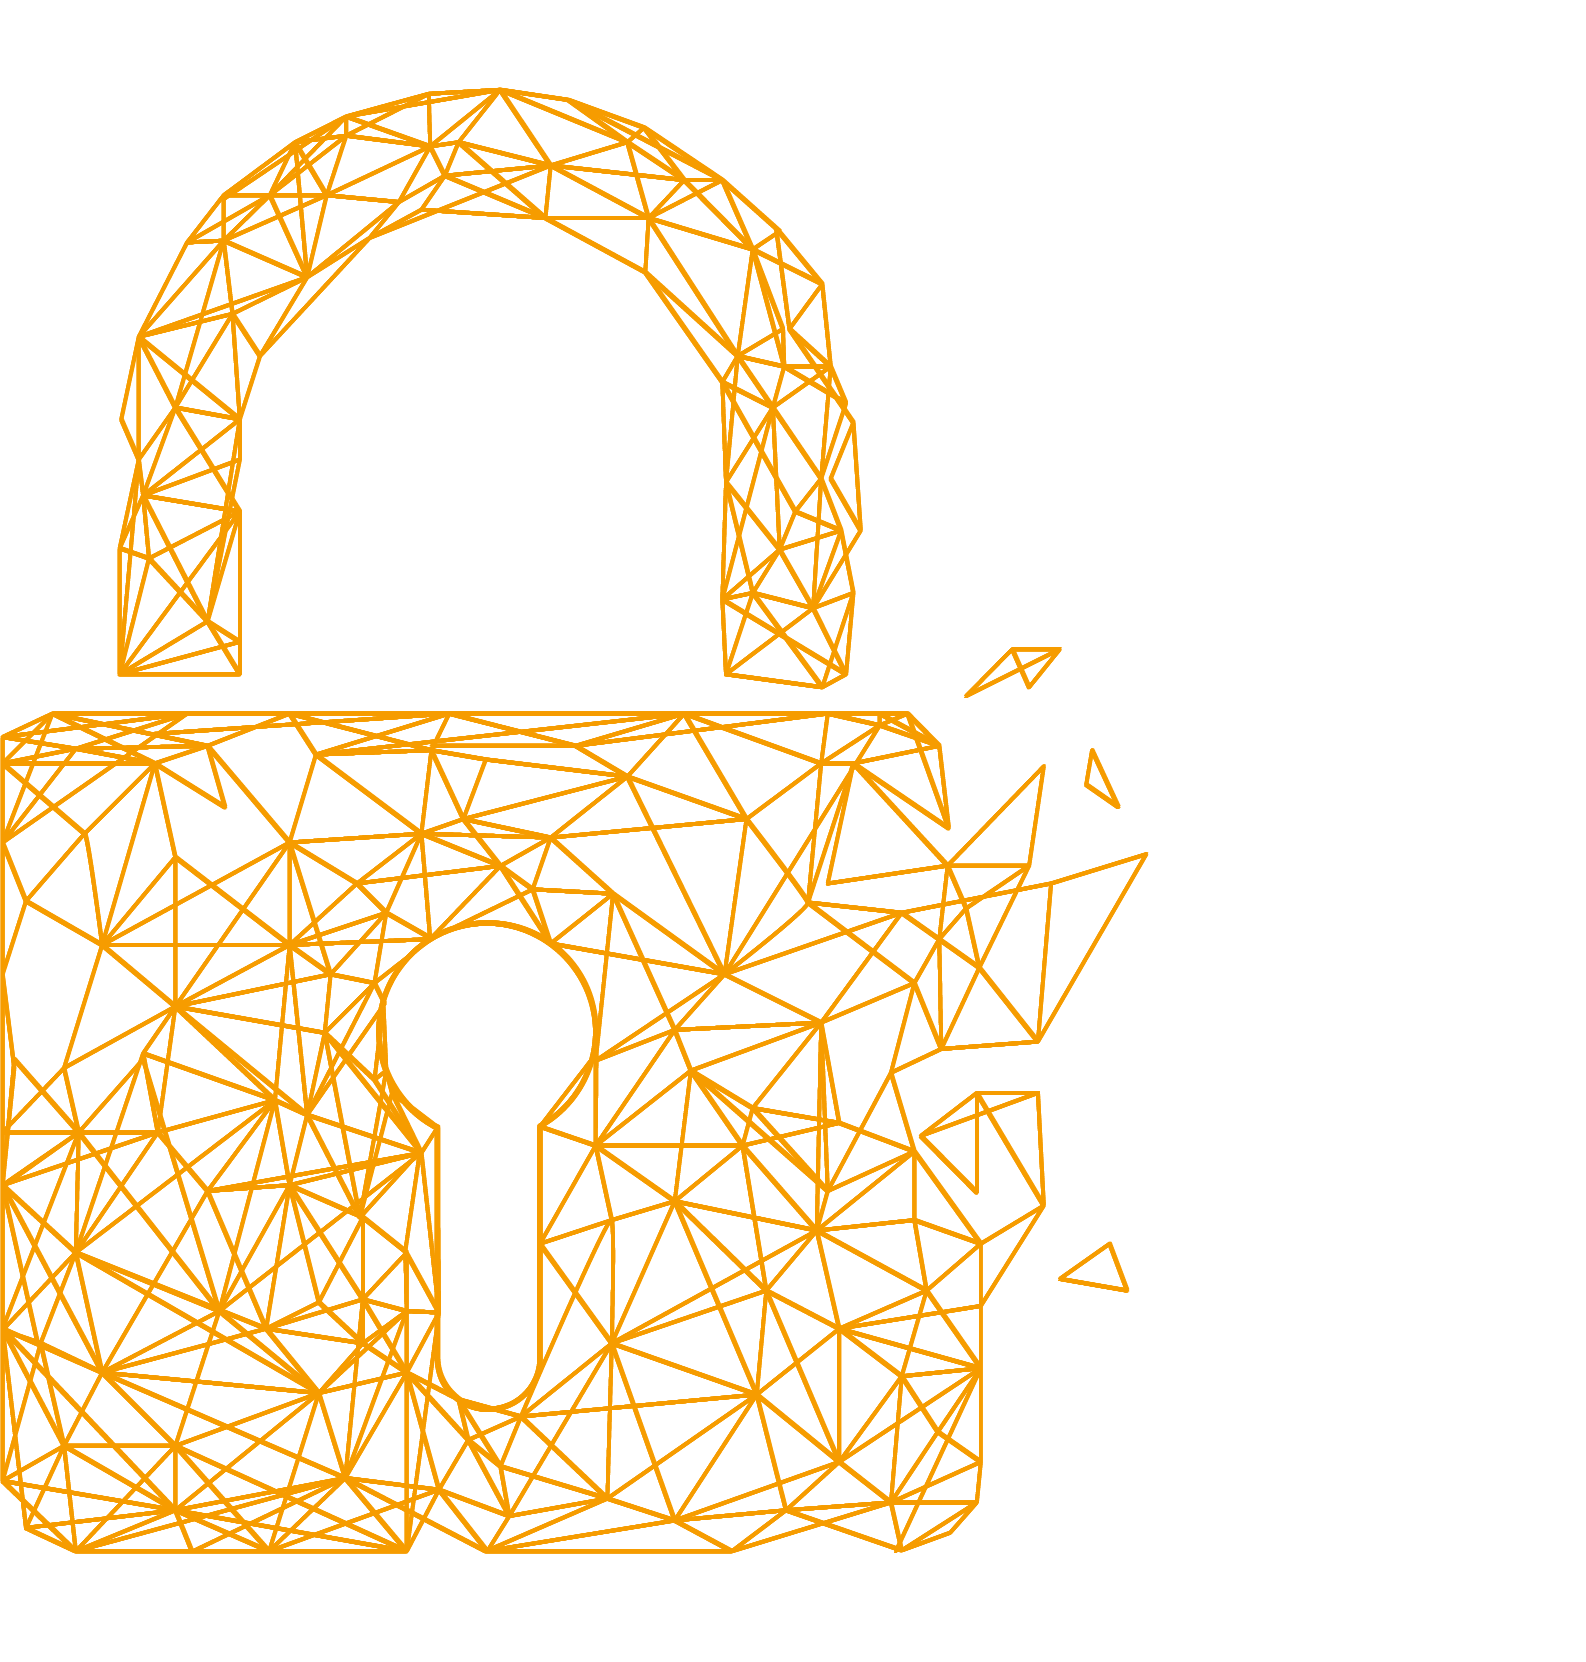 Netzgrafik eines Schlosses in Orange sinnbildlich für IT-Security bei abtis